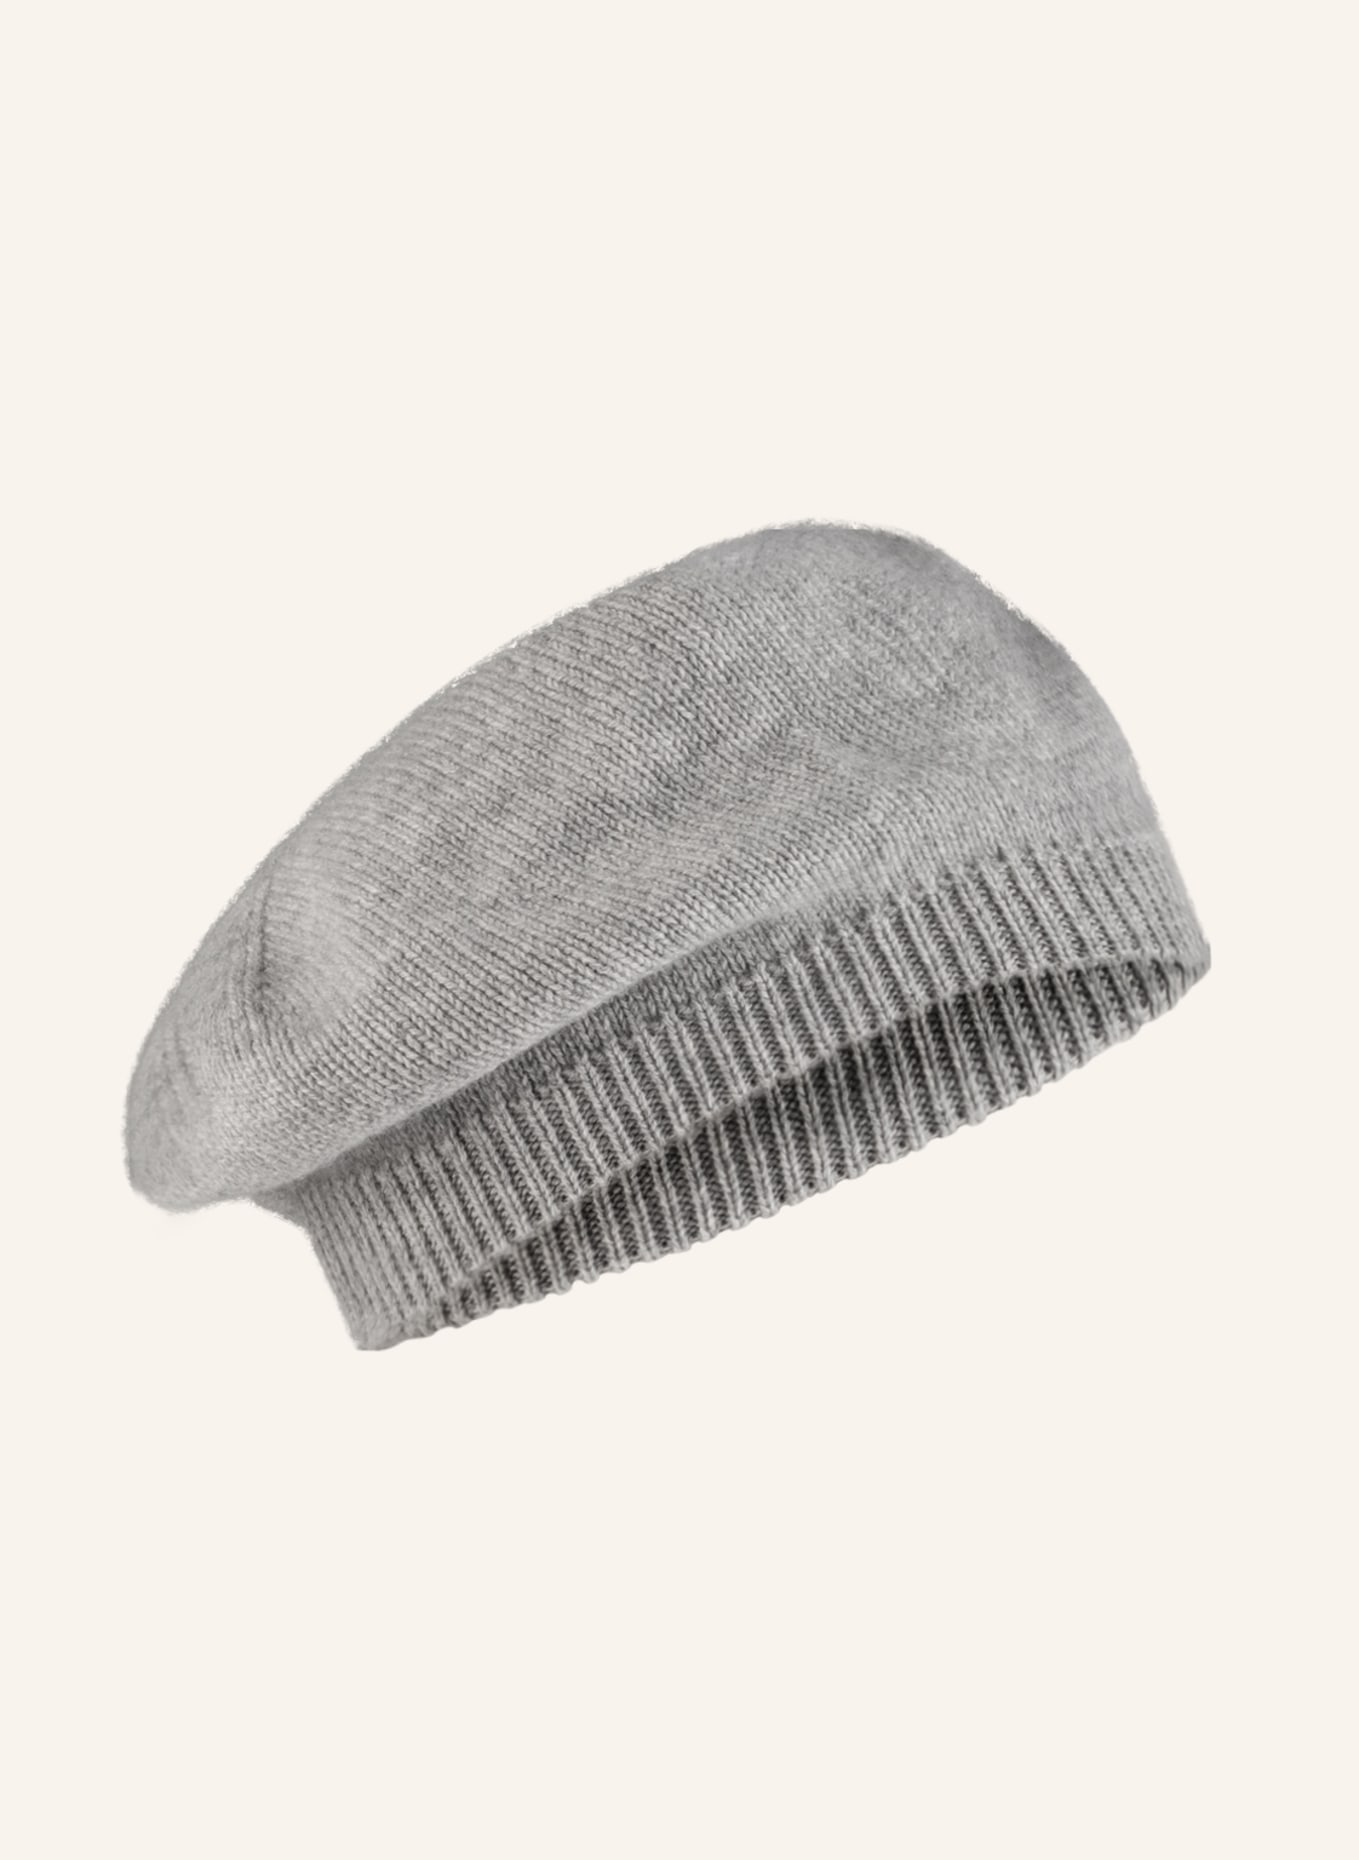 S.MARLON Cashmere hat, Color: GRAY (Image 2)